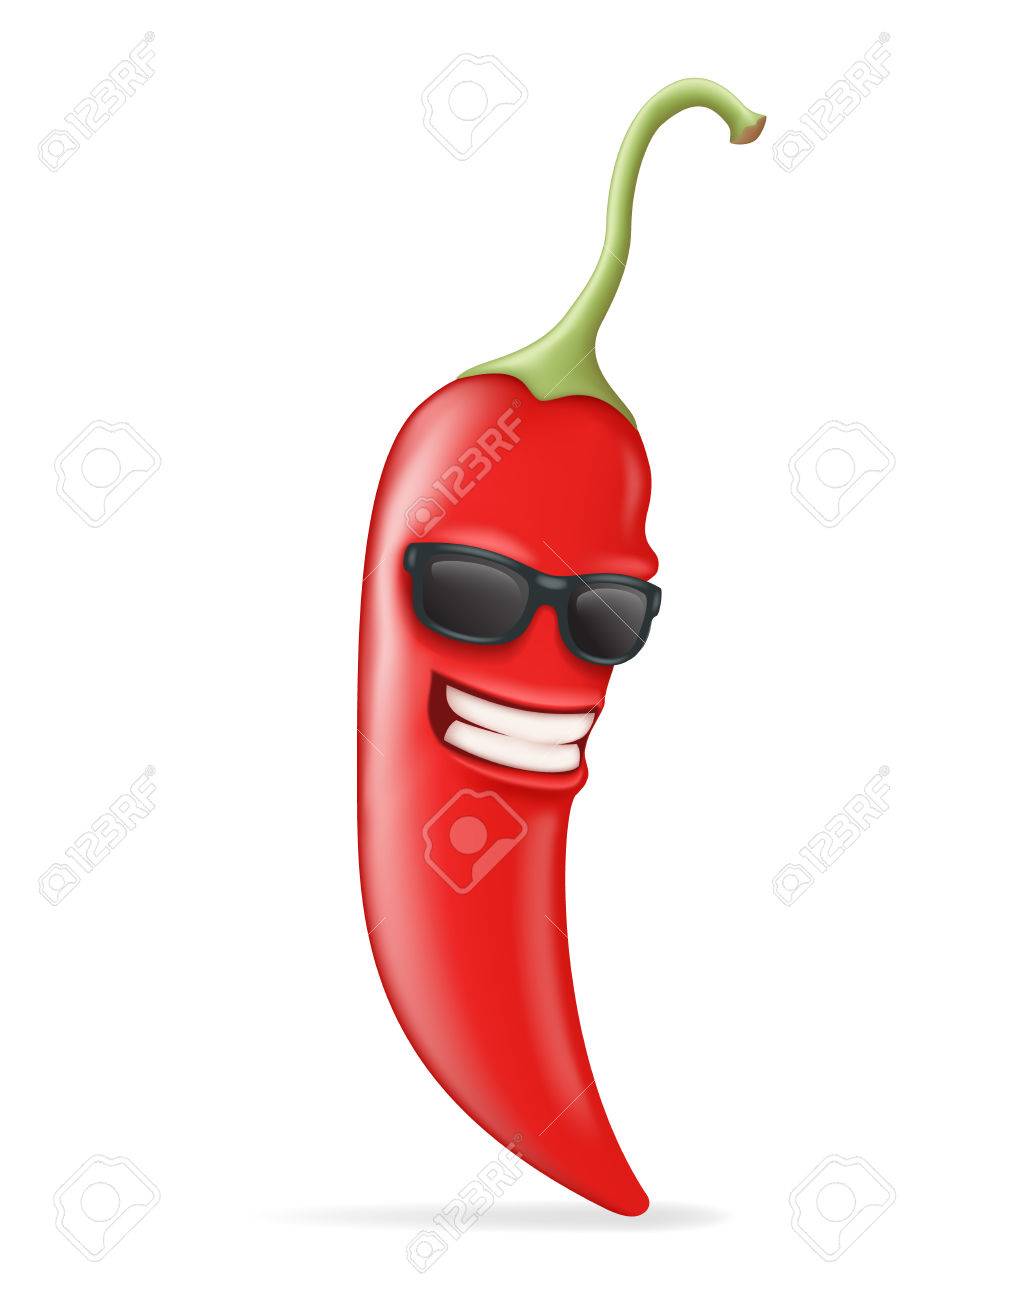 62191589-refroidir-character-hot-chili-pepper-sunglasses-bonne-conception-réaliste-vector-illustration